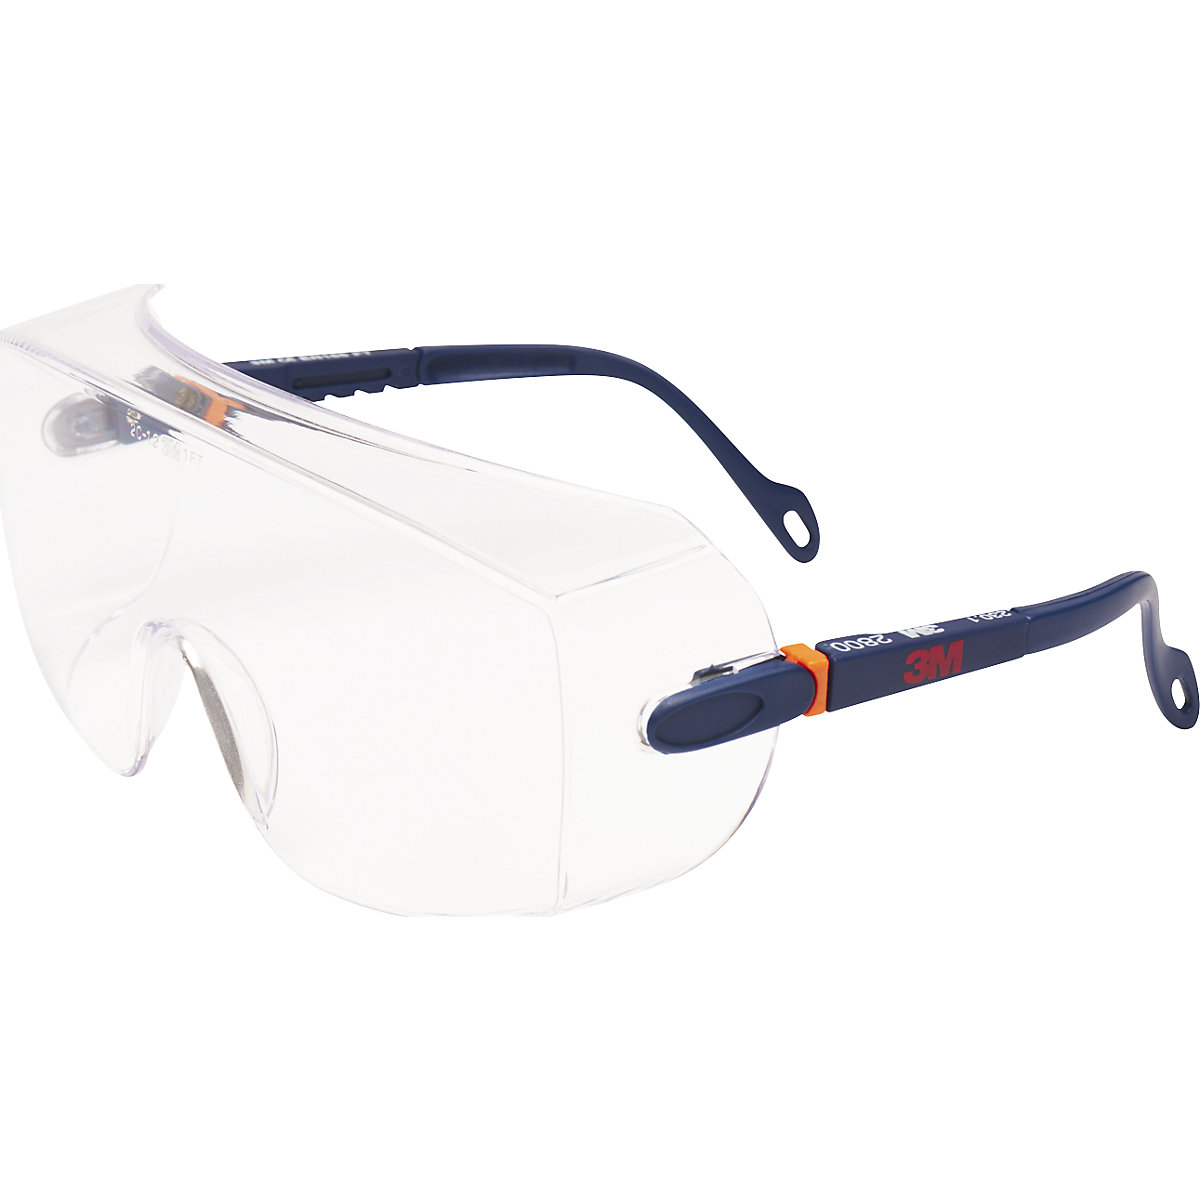 Látásjavító szemüveg felett hordható védőszemüveg, 2800 - 3M